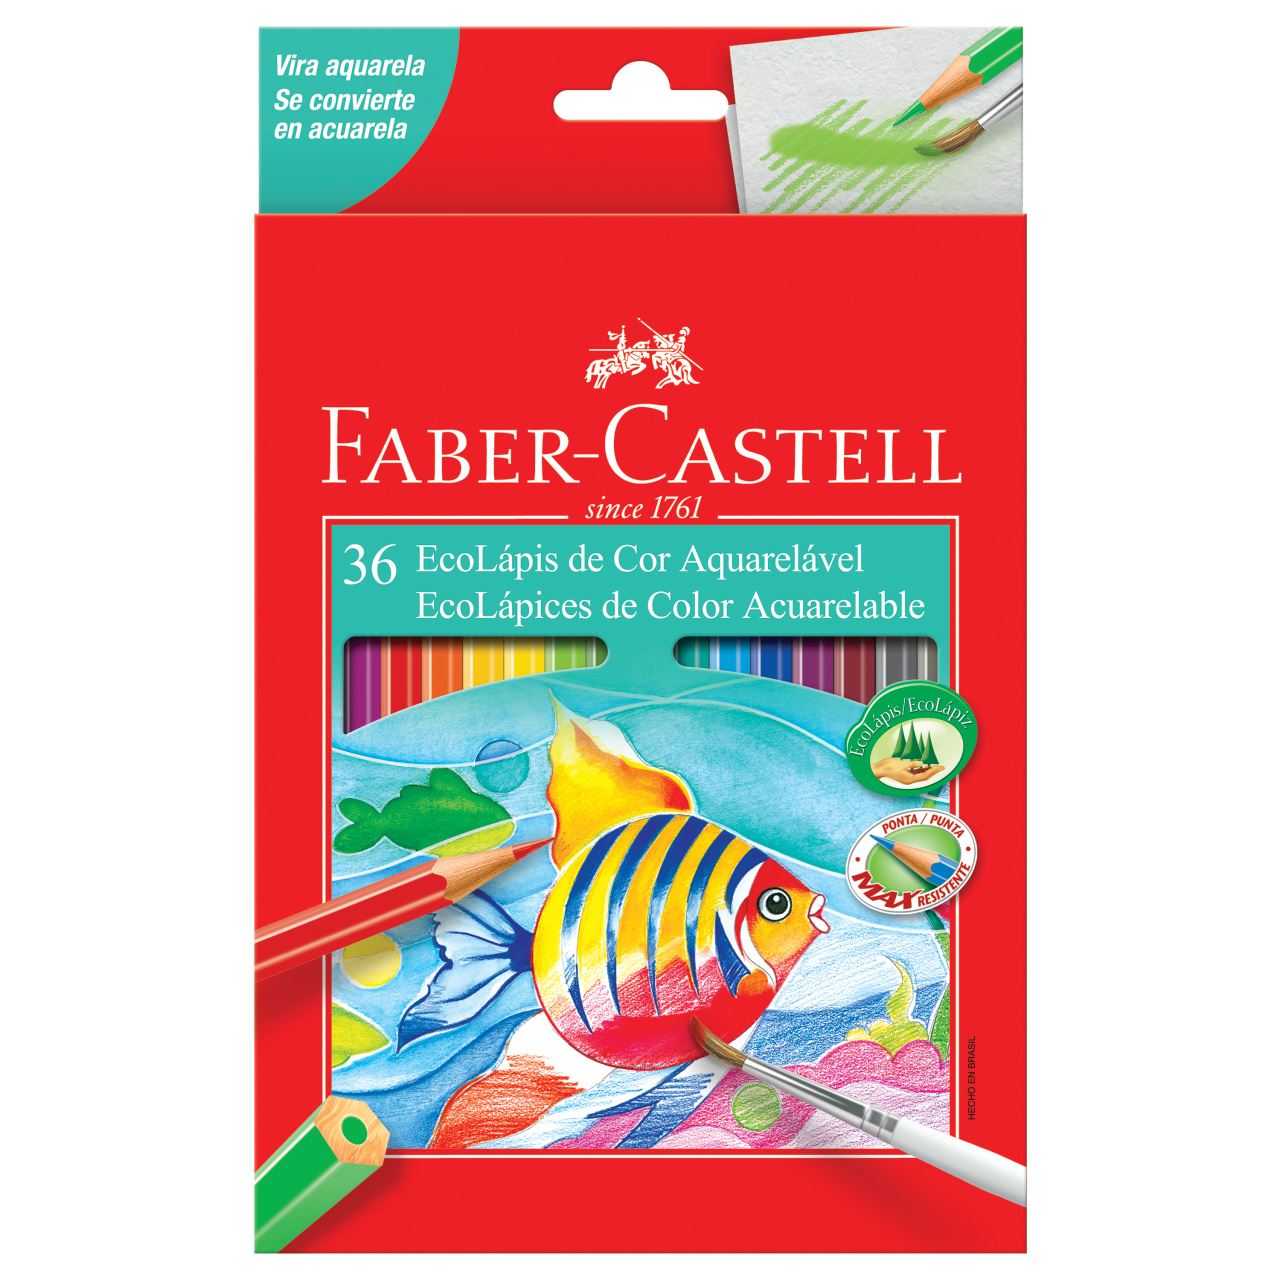 Faber-Castell - Ecolapis de Cor Aquarelavel 36 Cores